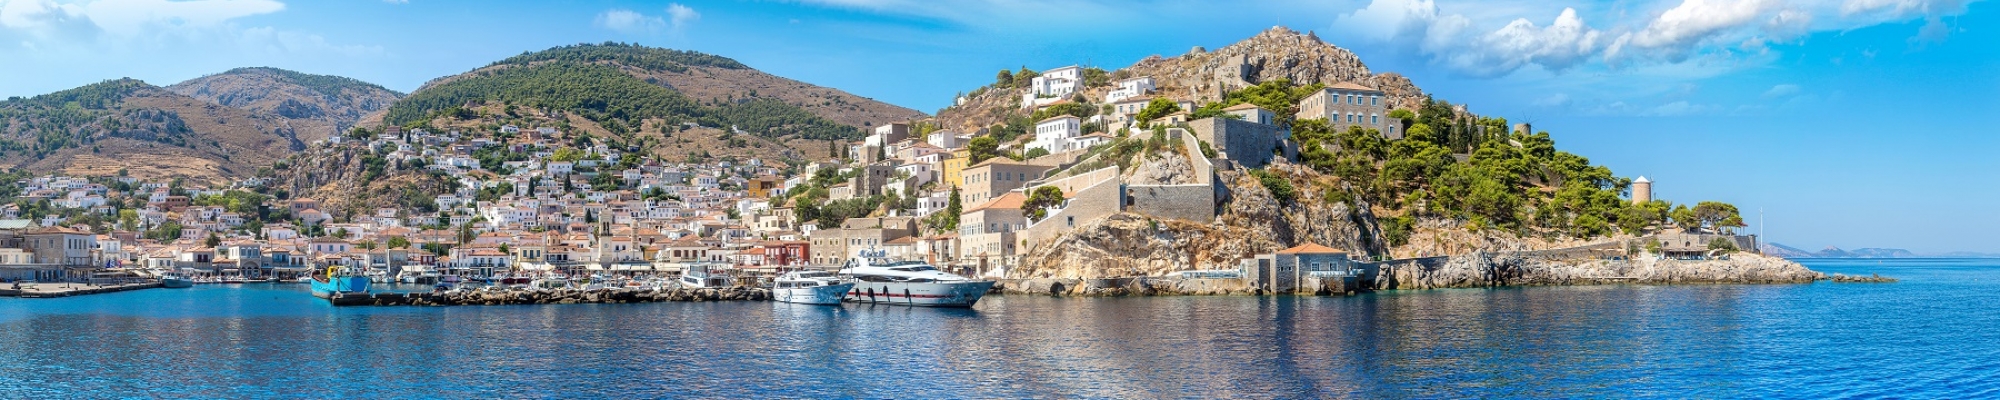 Ile Hydra séjour en Grèce voyage sur mesure